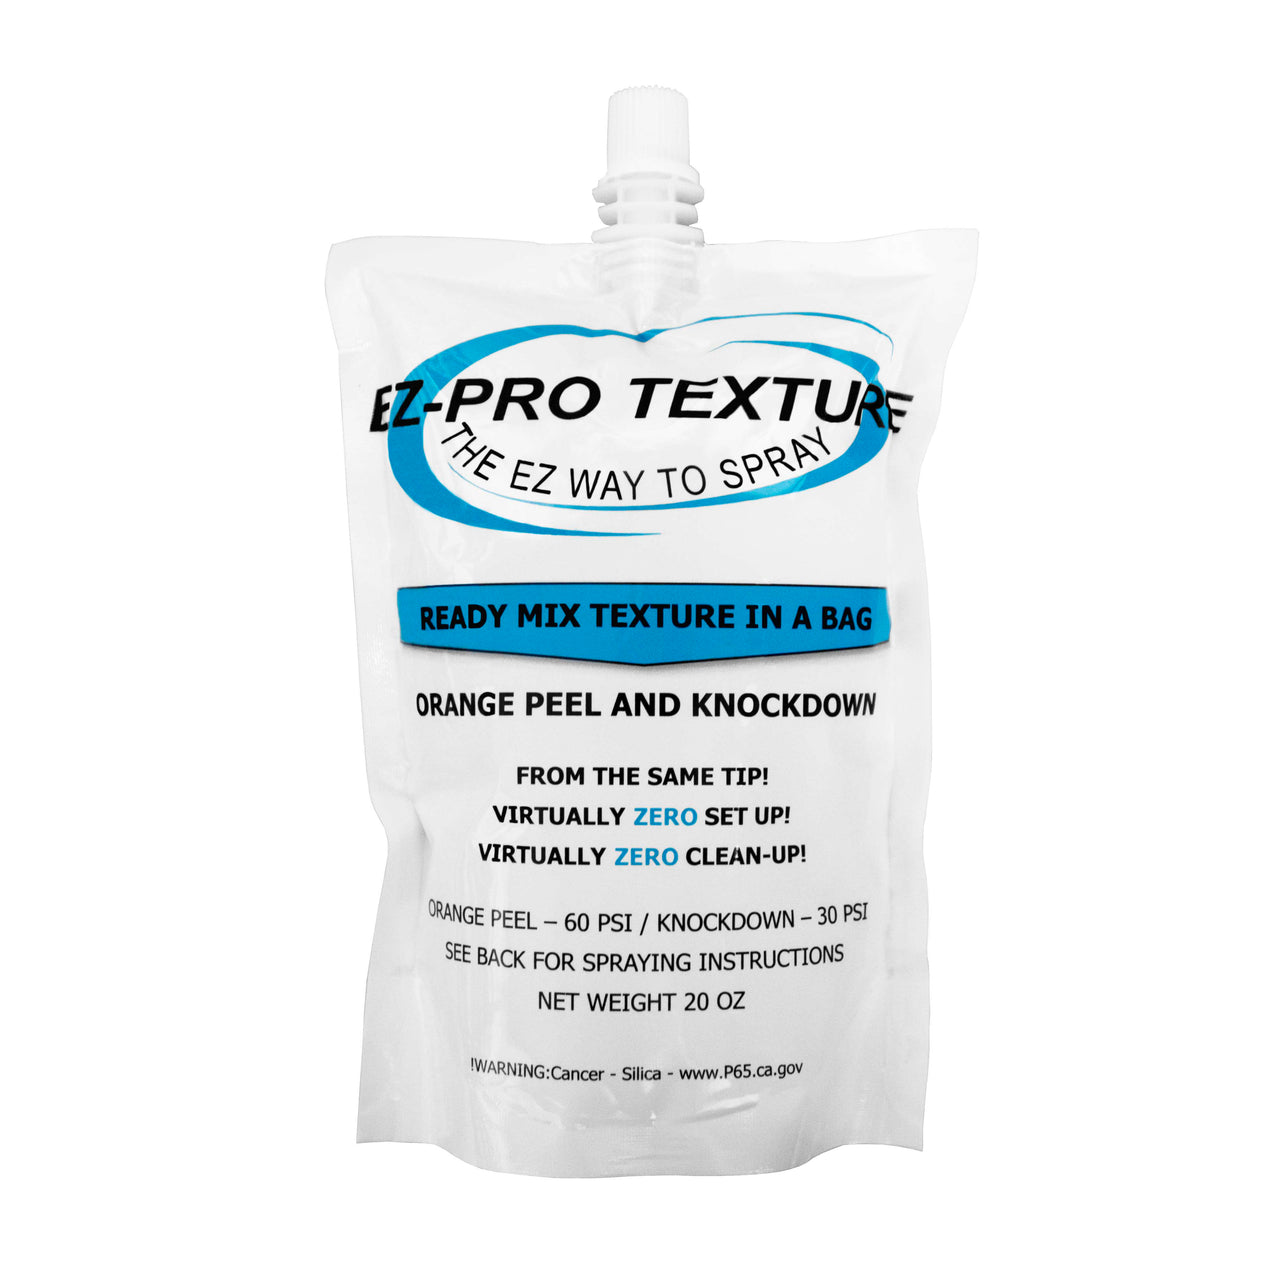 EZ-Pro Texture Bags